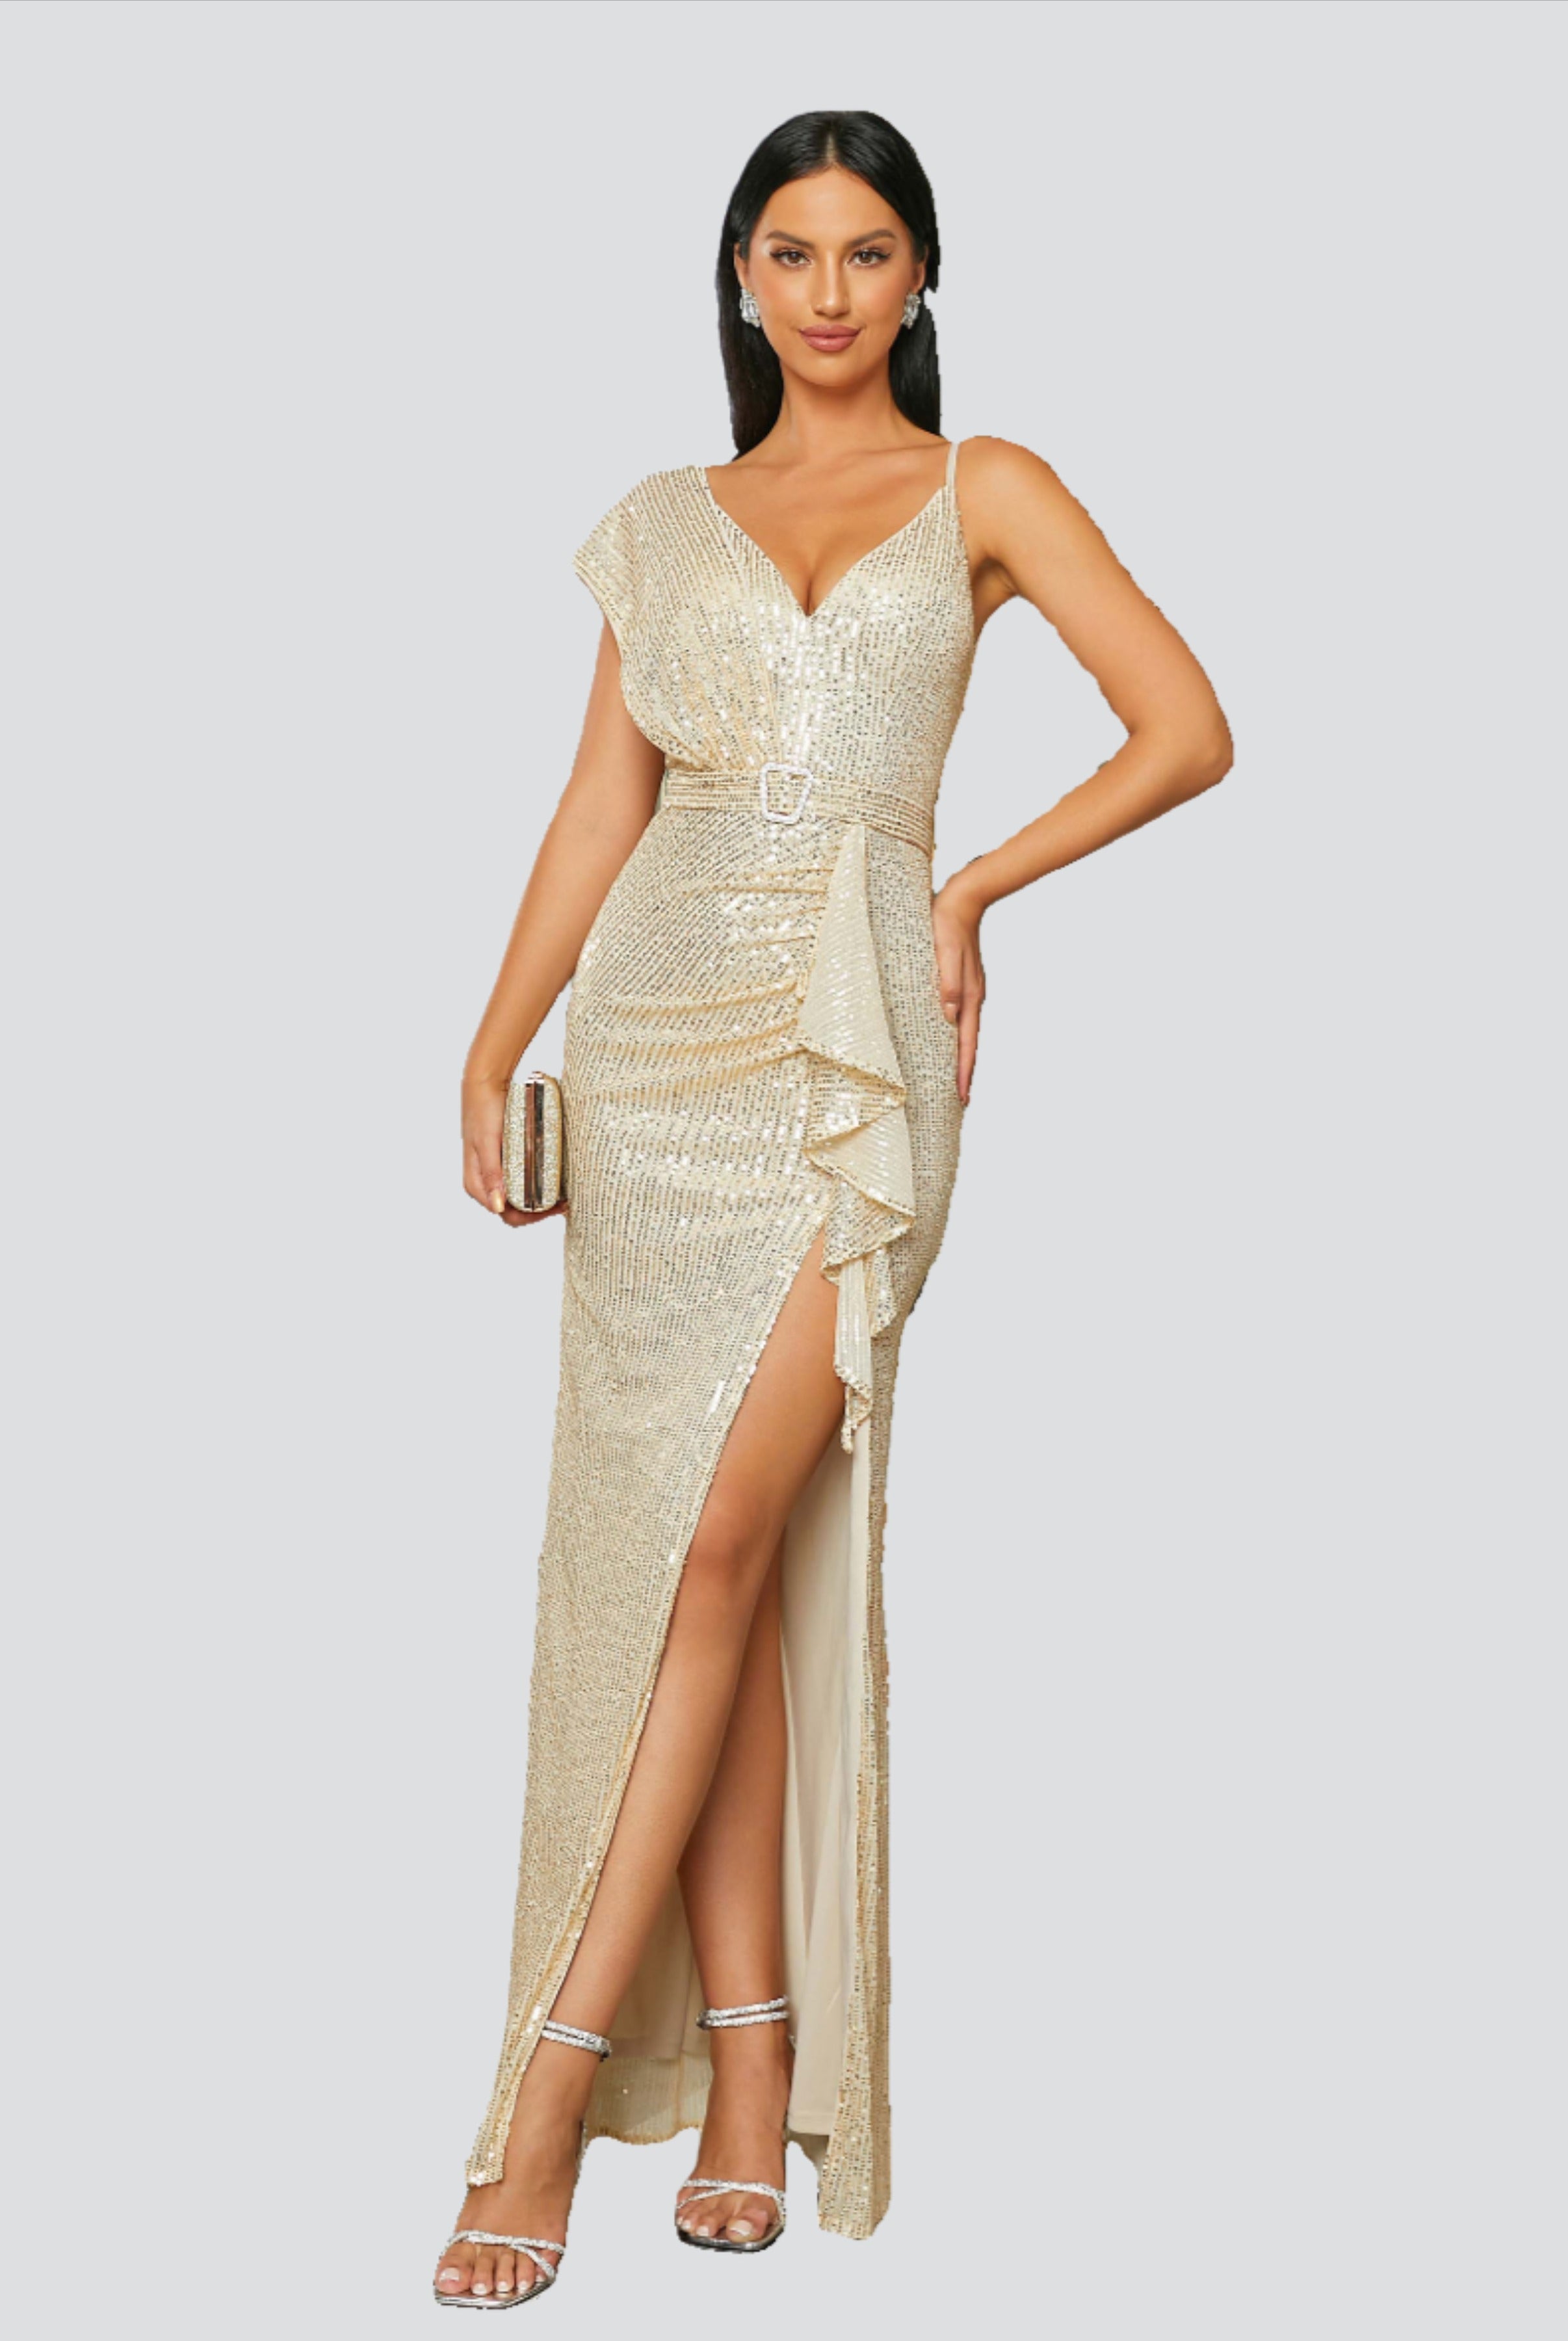 Sleeveless Ruffle Sequin Gold Evening Dress RH30590